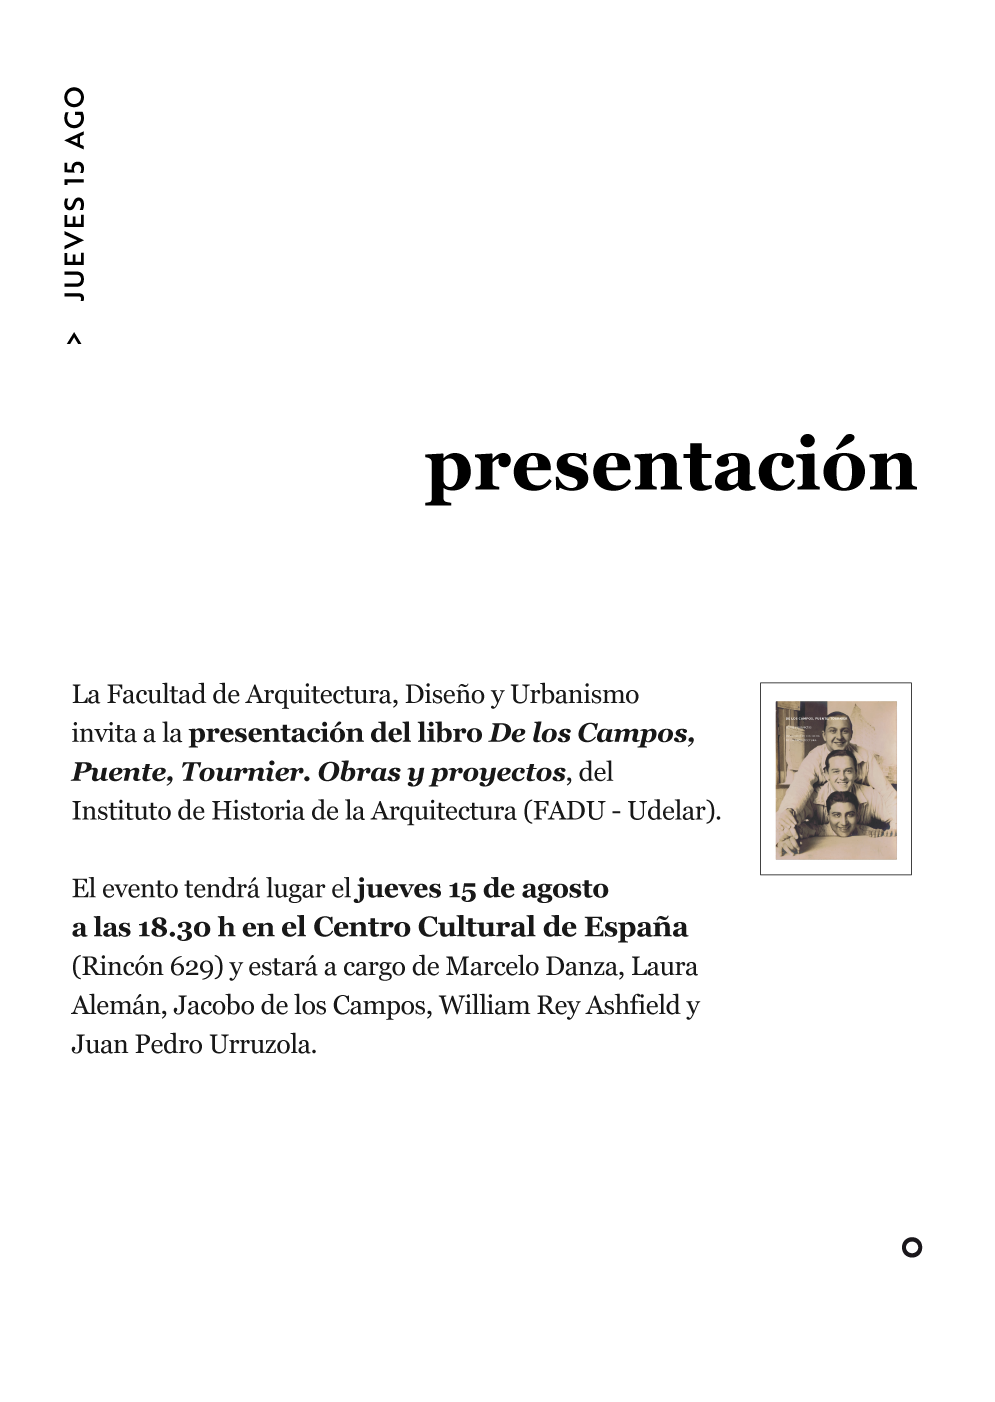 Presentación del libro “De los Campos, Puente, Tournier. Obras y proyectos”